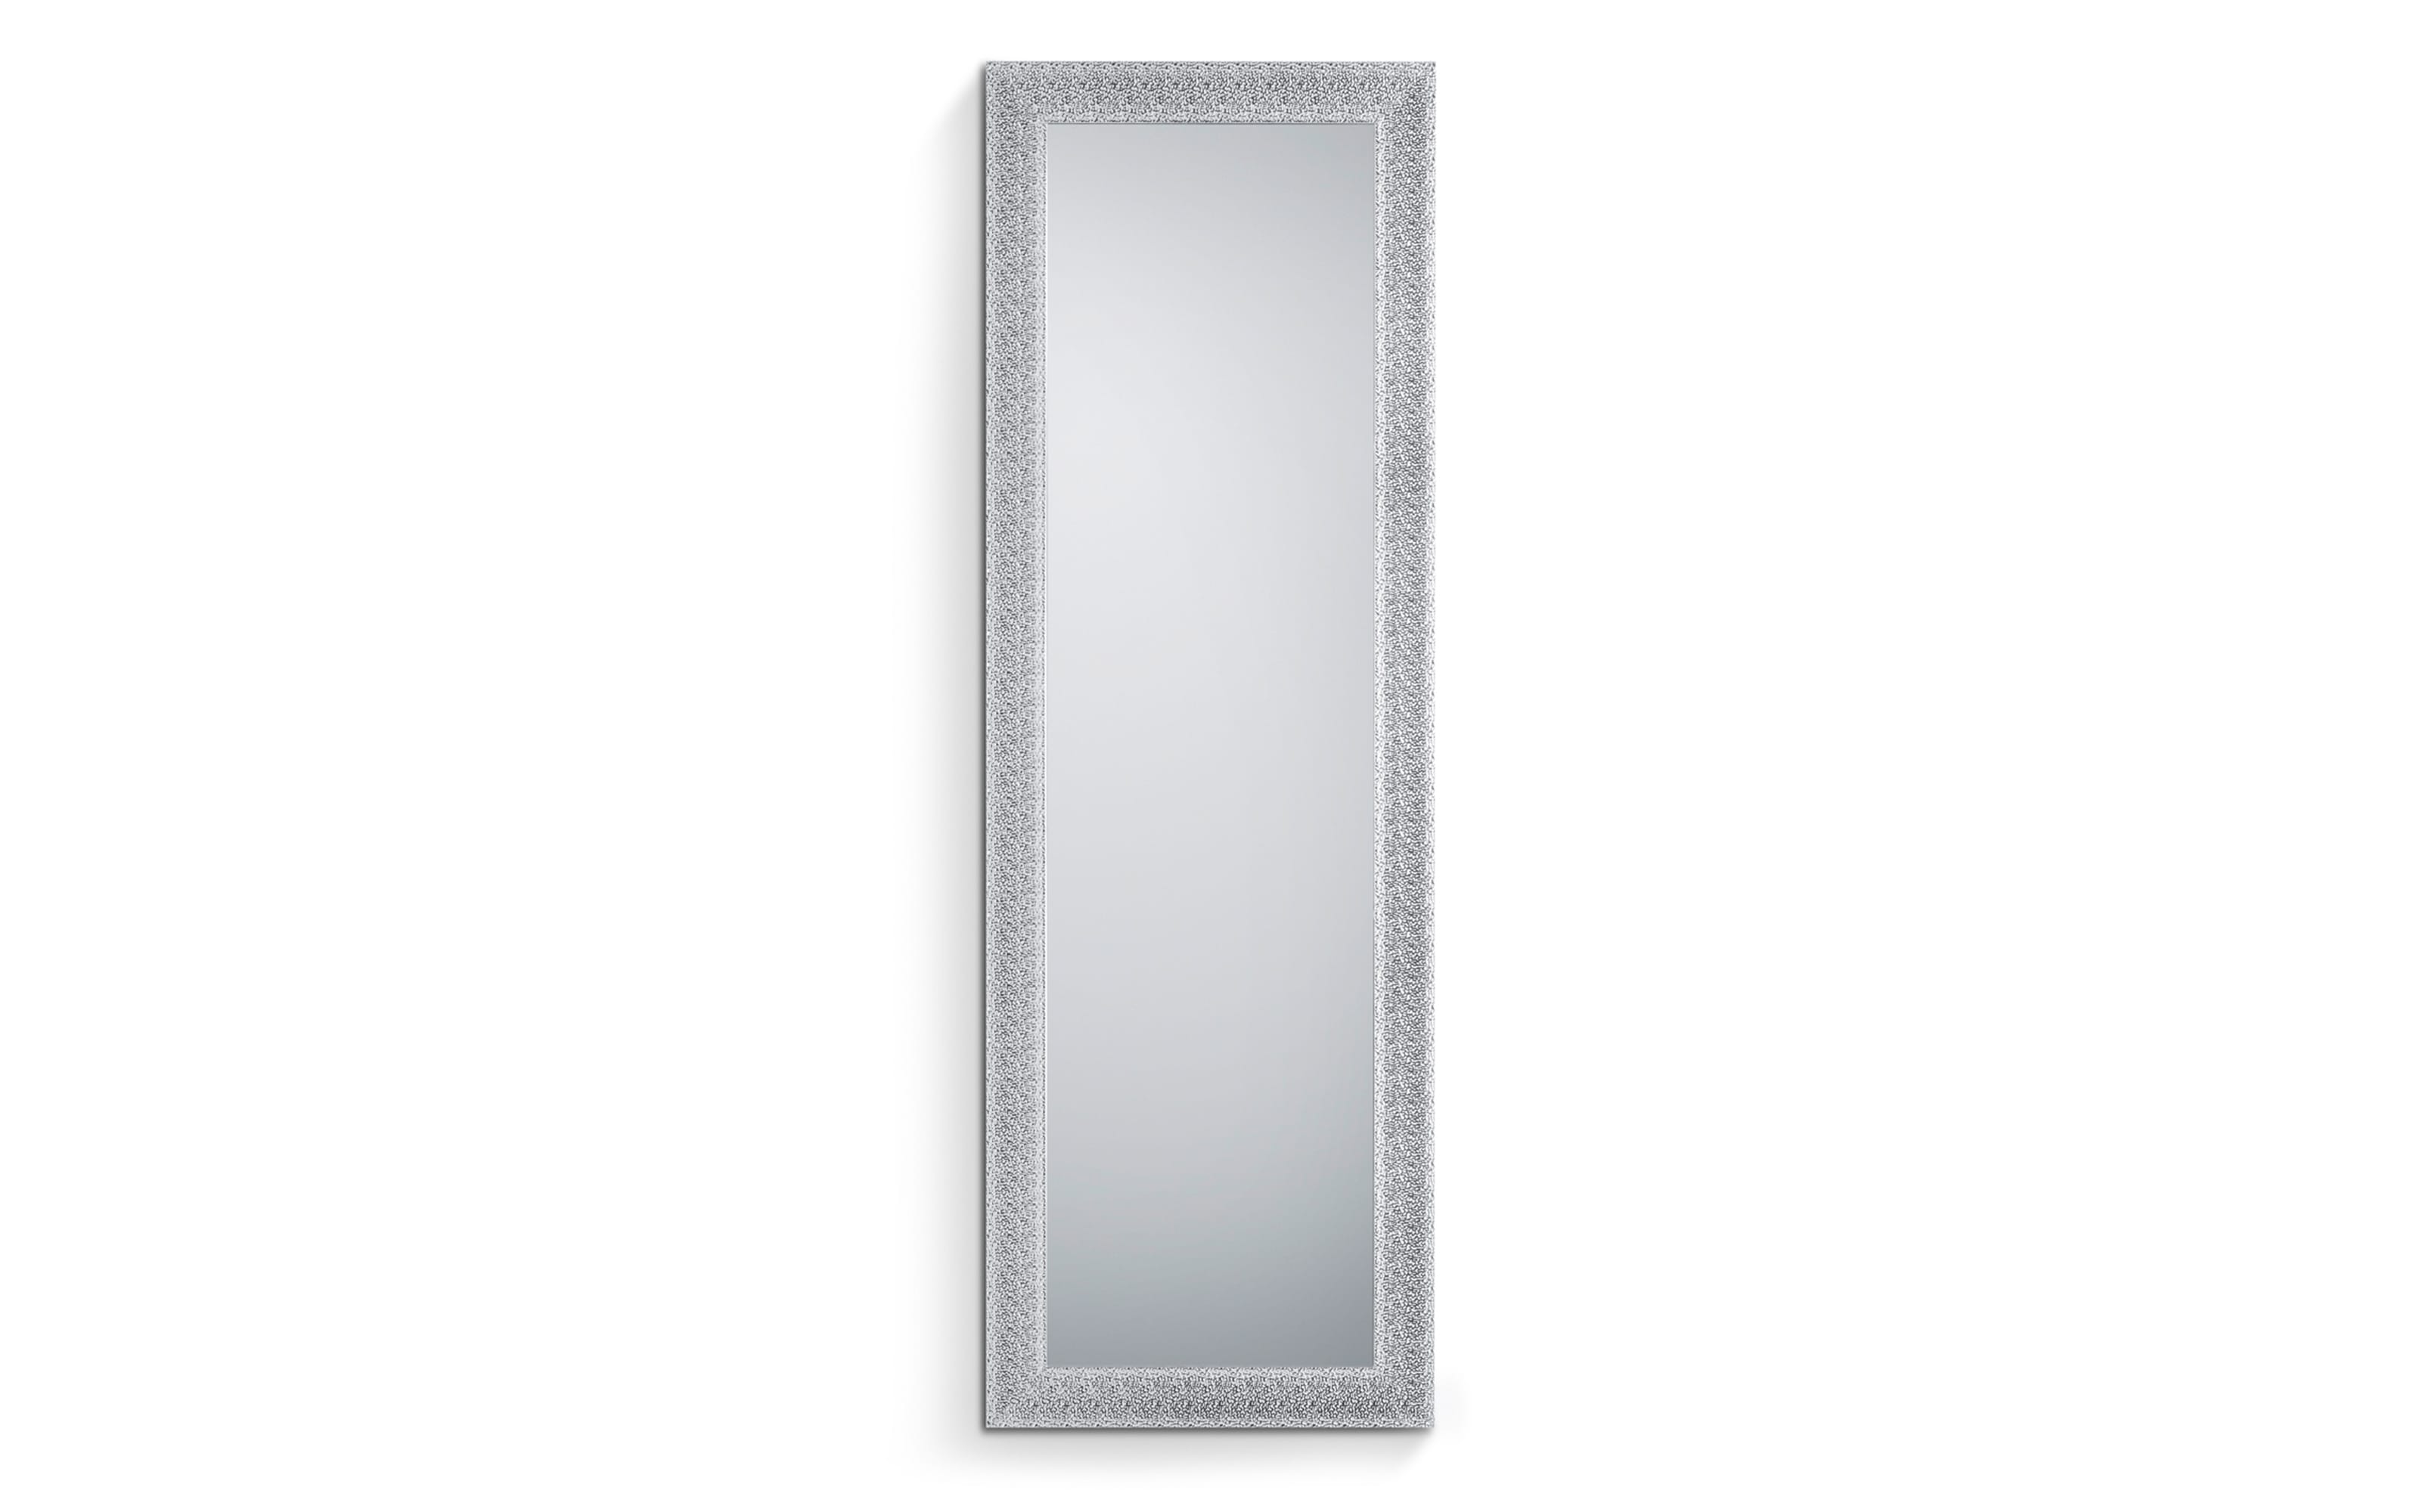 Rahmenspiegel Ariane in chromfarbig, 50 x 150 cm